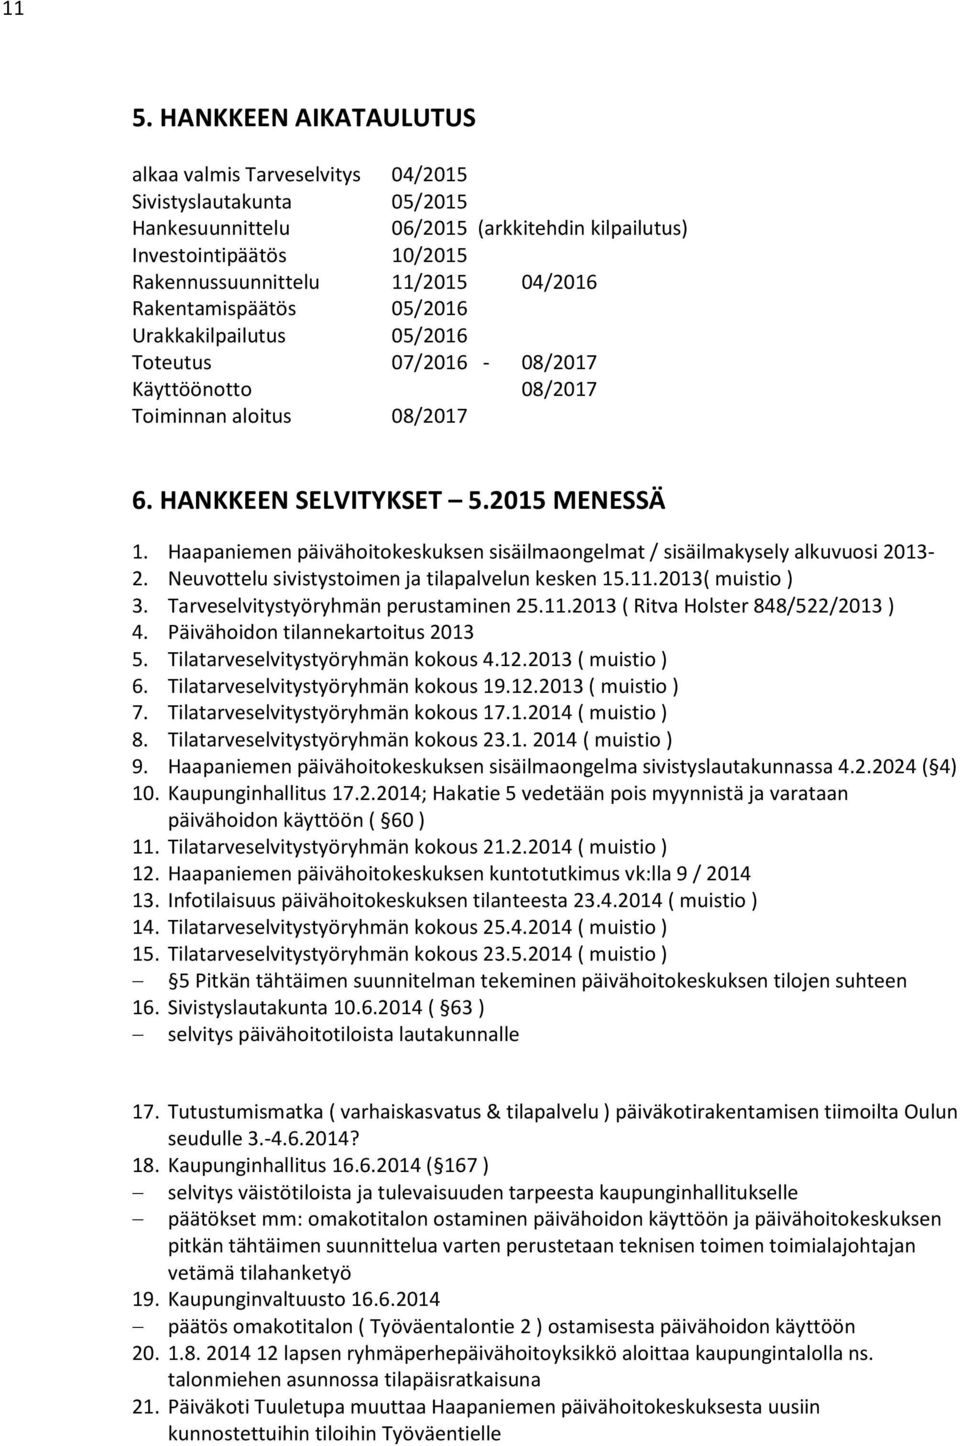 Haapaniemen päivähoitokeskuksen sisäilmaongelmat / sisäilmakysely alkuvuosi 2013-2. Neuvottelu sivistystoimen ja tilapalvelun kesken 15.11.2013( muistio ) 3. Tarveselvitystyöryhmän perustaminen 25.11.2013 ( Ritva Holster 848/522/2013 ) 4.